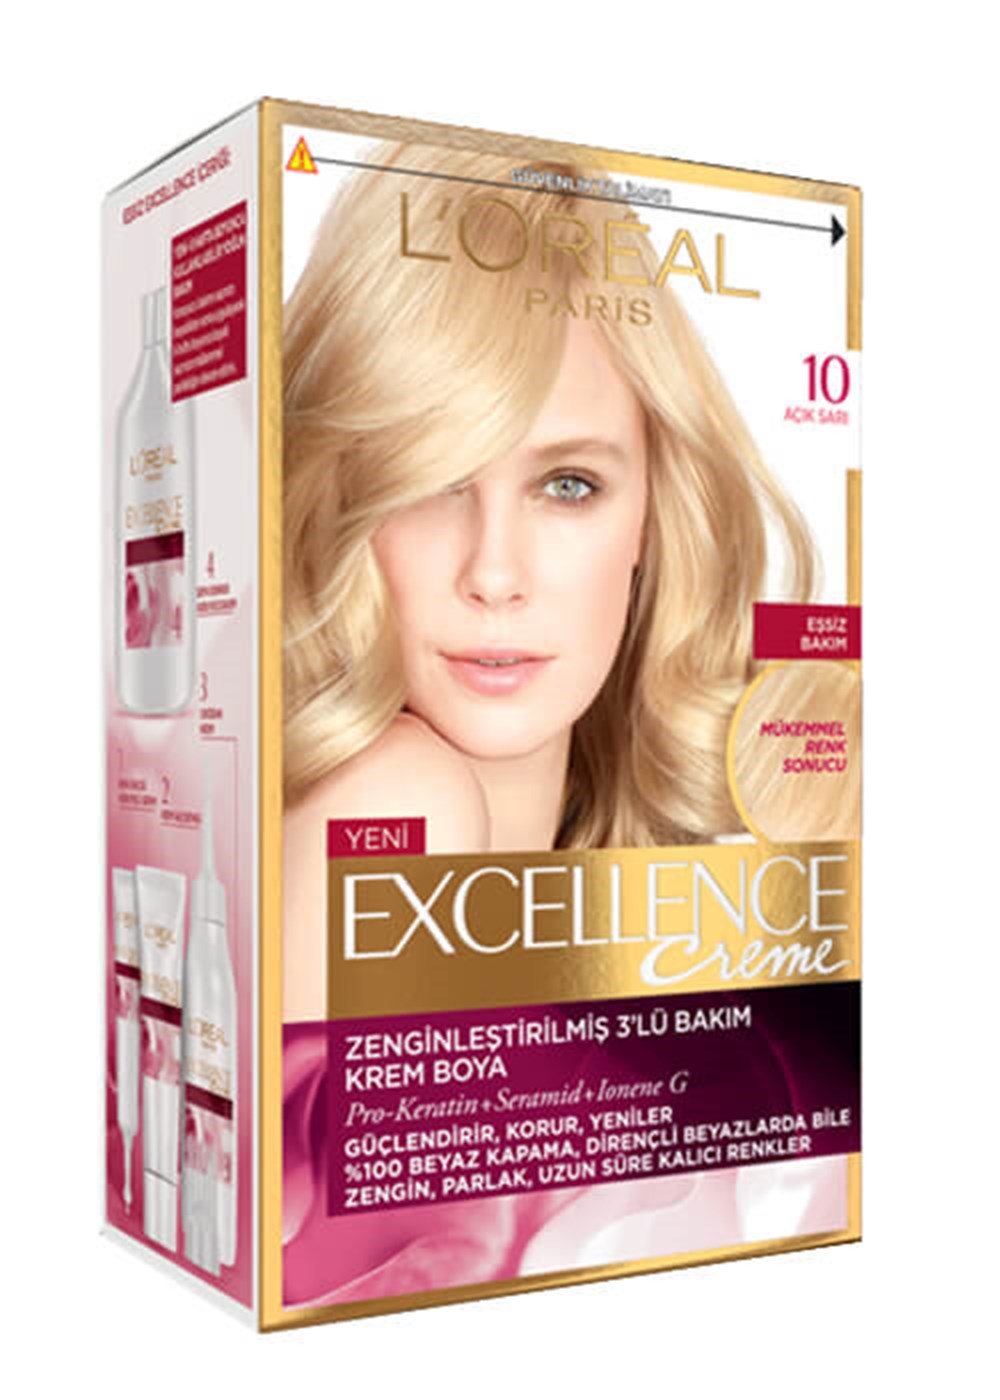 Loreal Paris Saç Boyası Excellence creme 10 Acık Sarı | Netegir.com